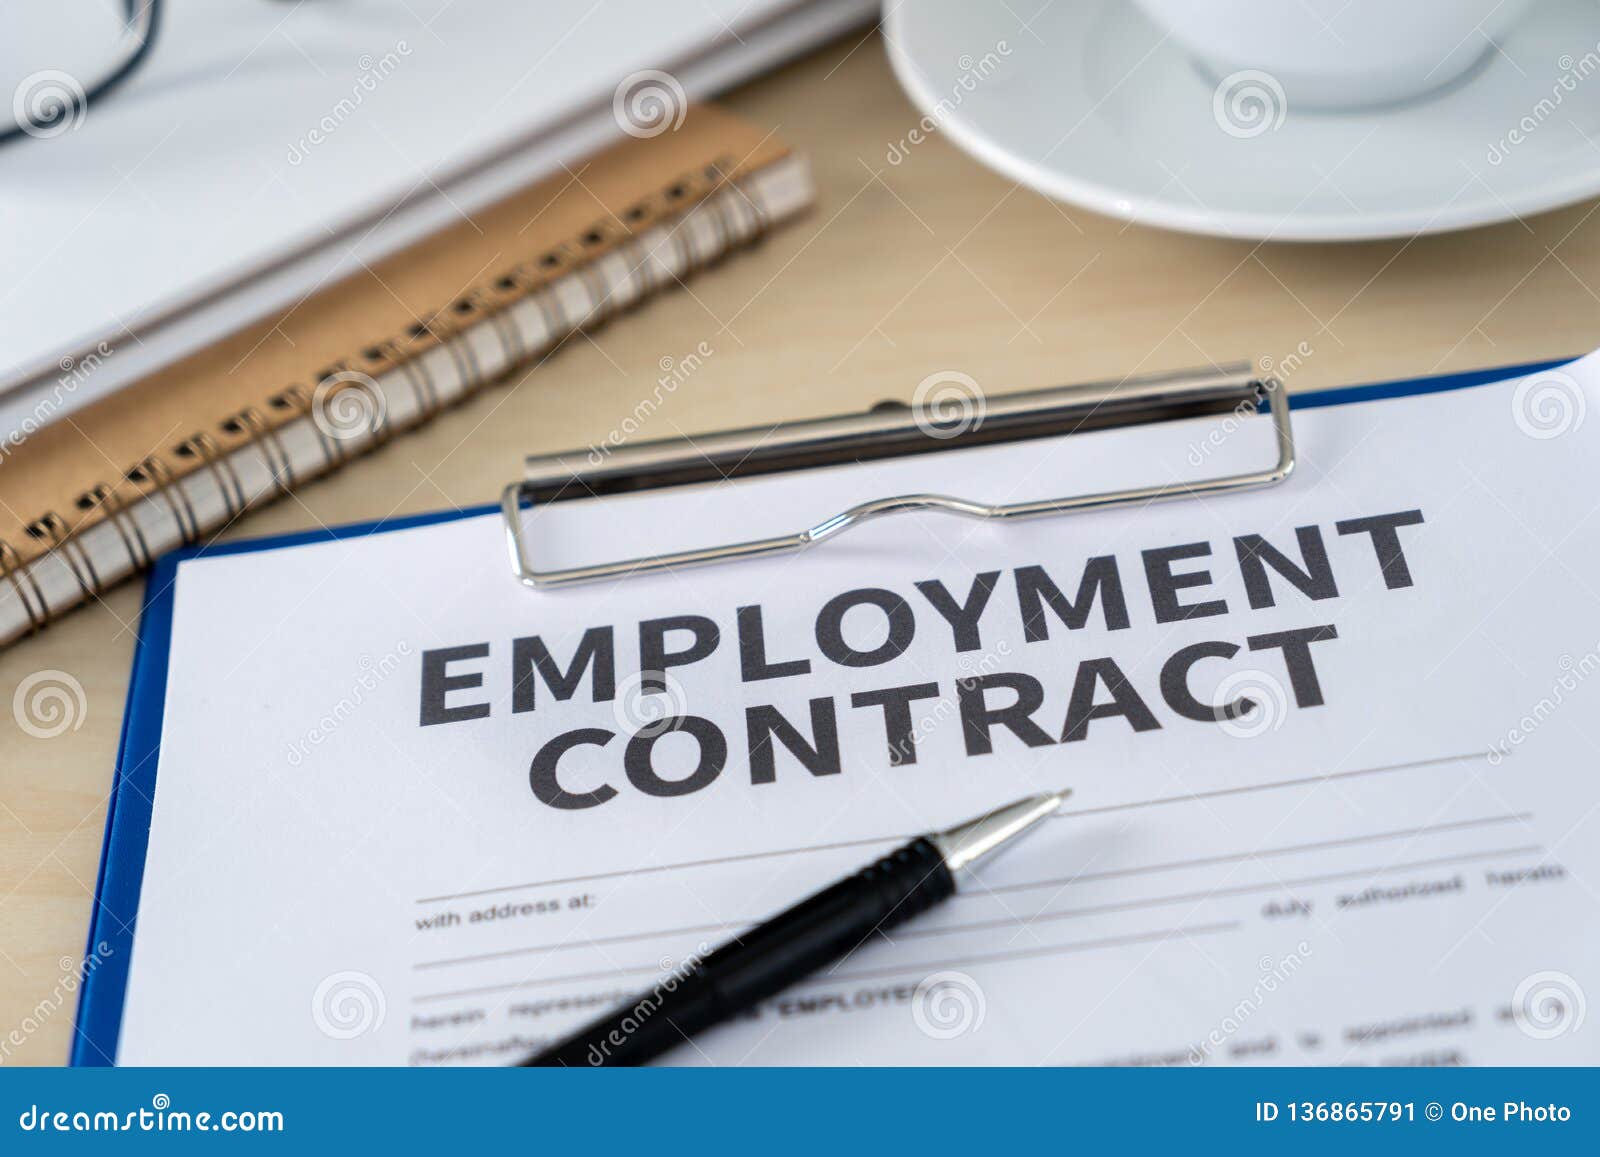 contract jobs houston